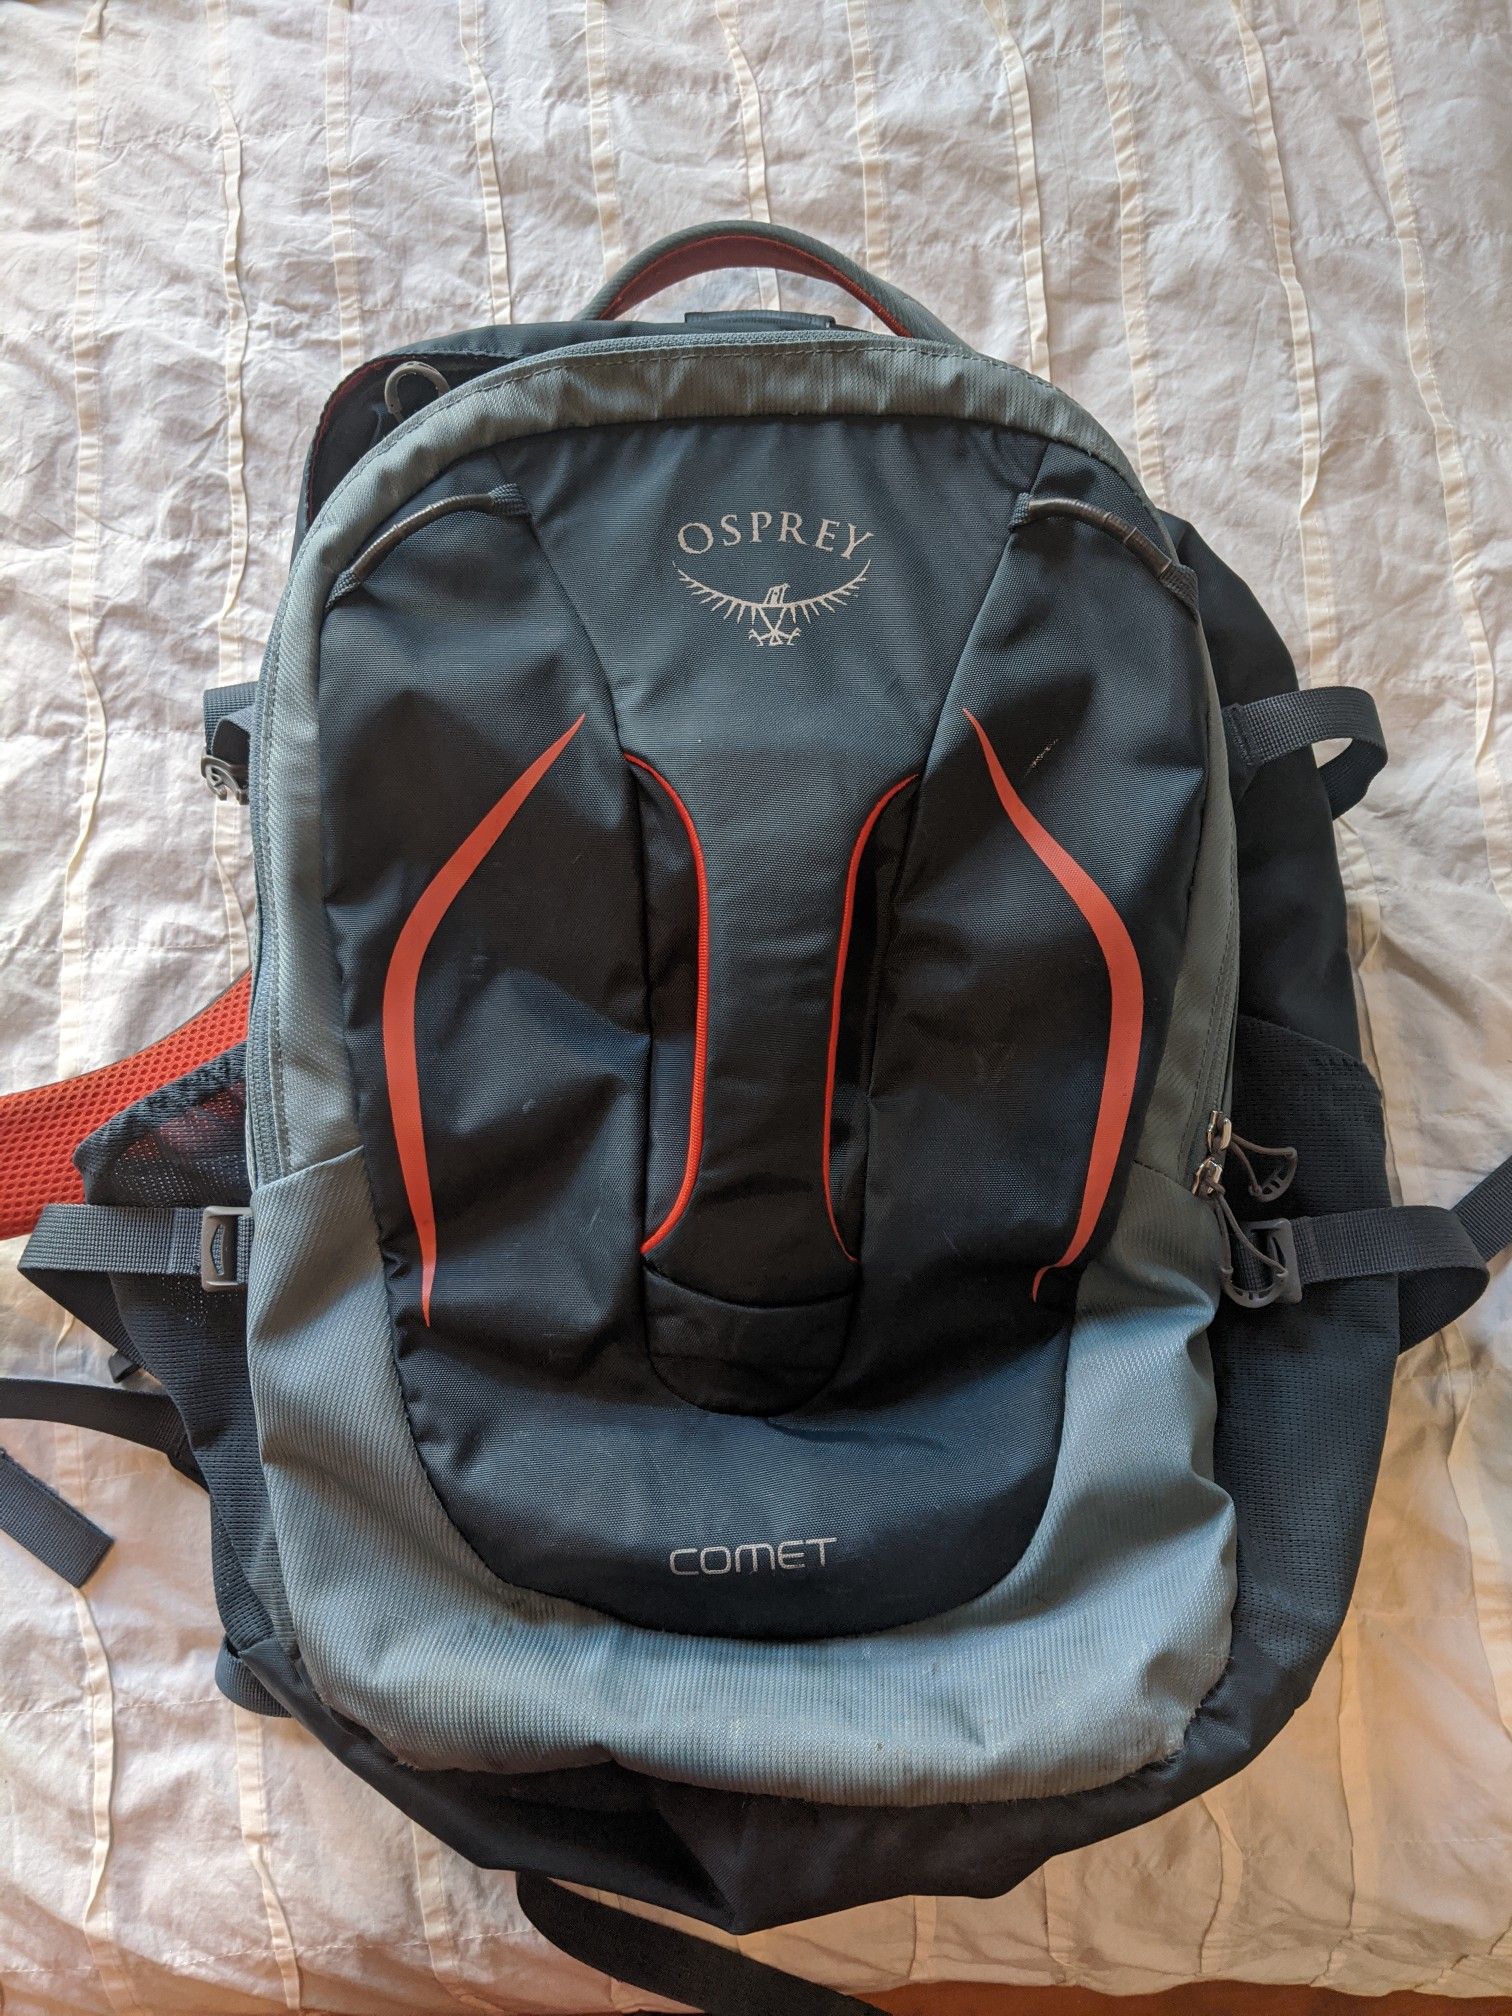 Osprey Comet 30L backpack (Armor grey)